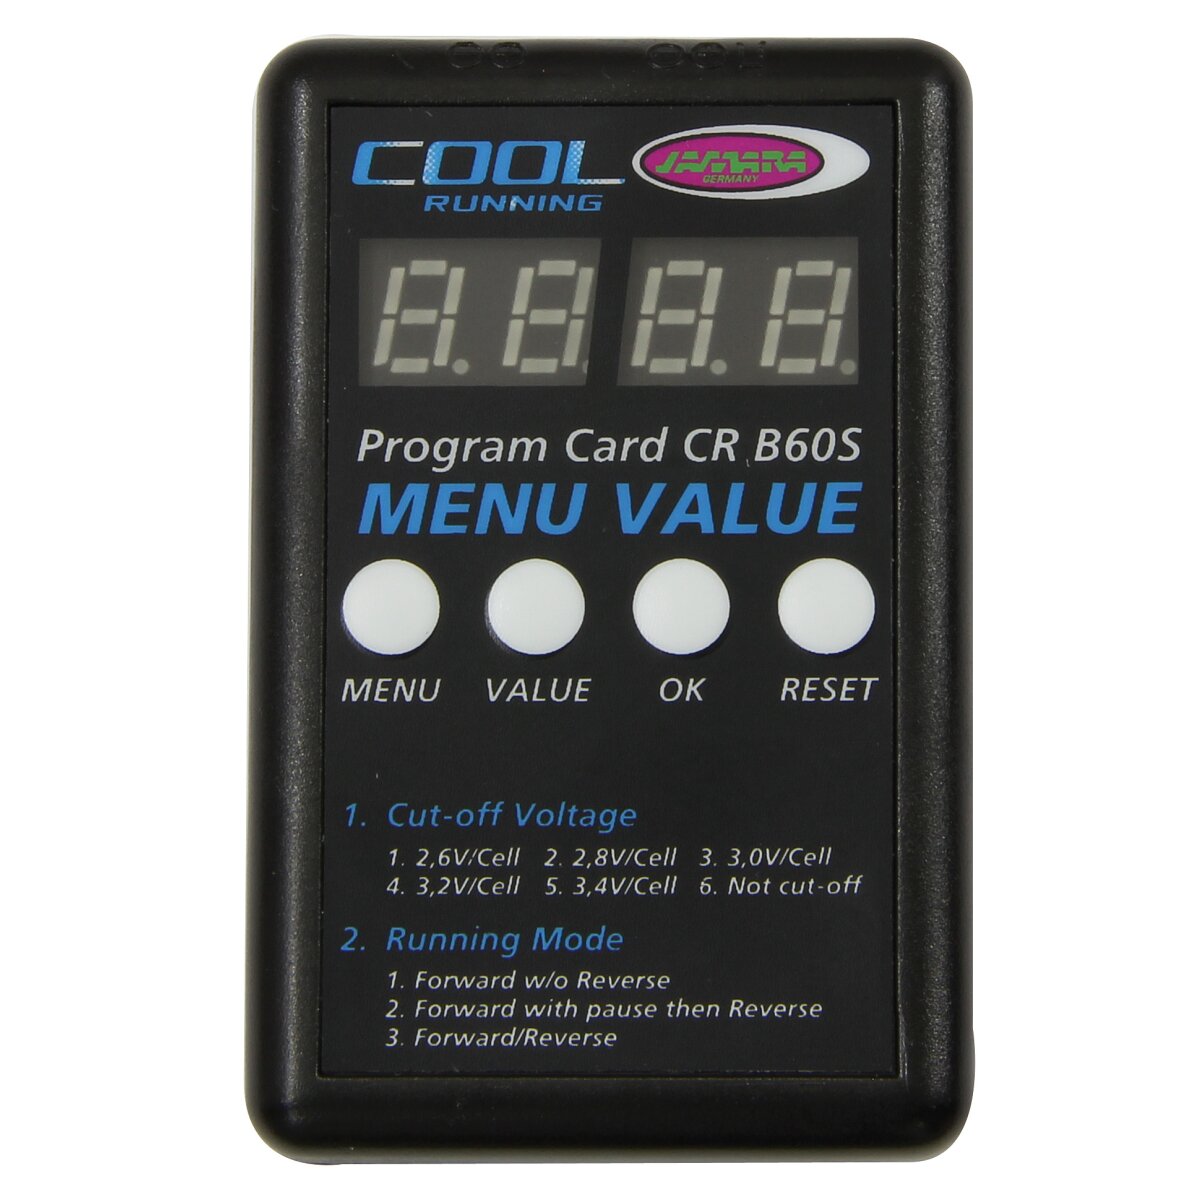 Programmierkarte CRB60/80S nur für 081458